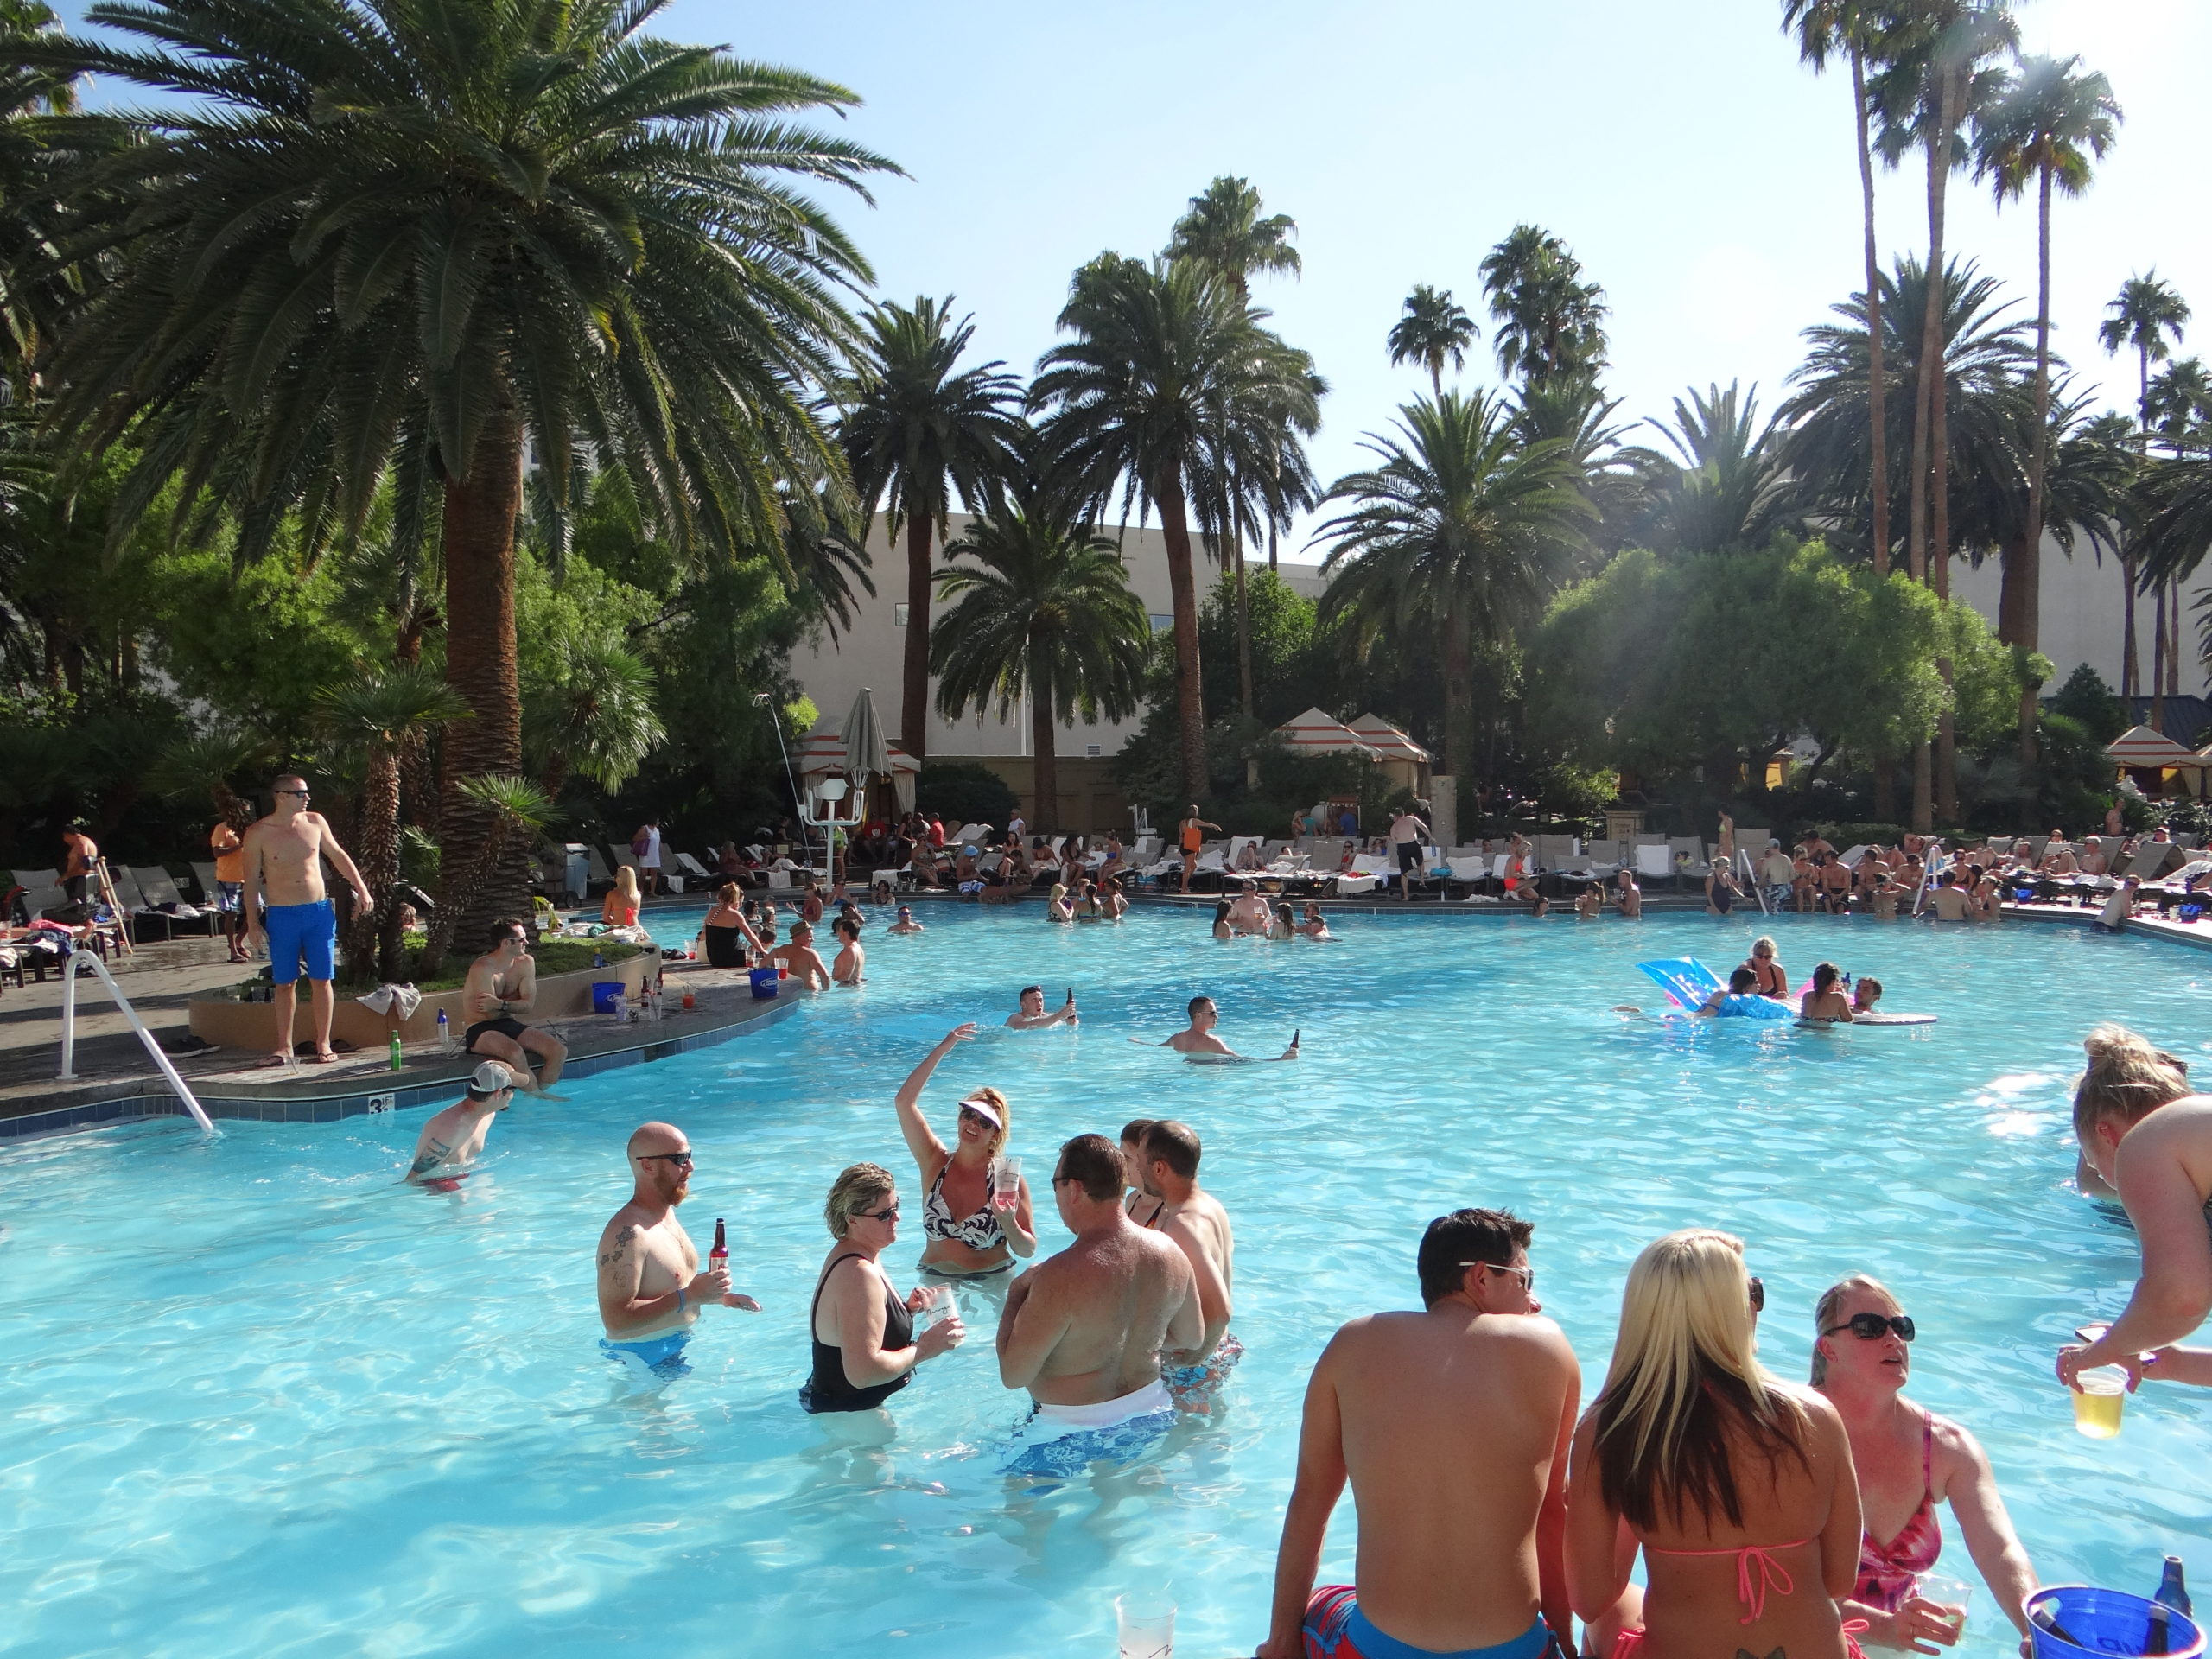 Pool at The Mirage Las Vegas